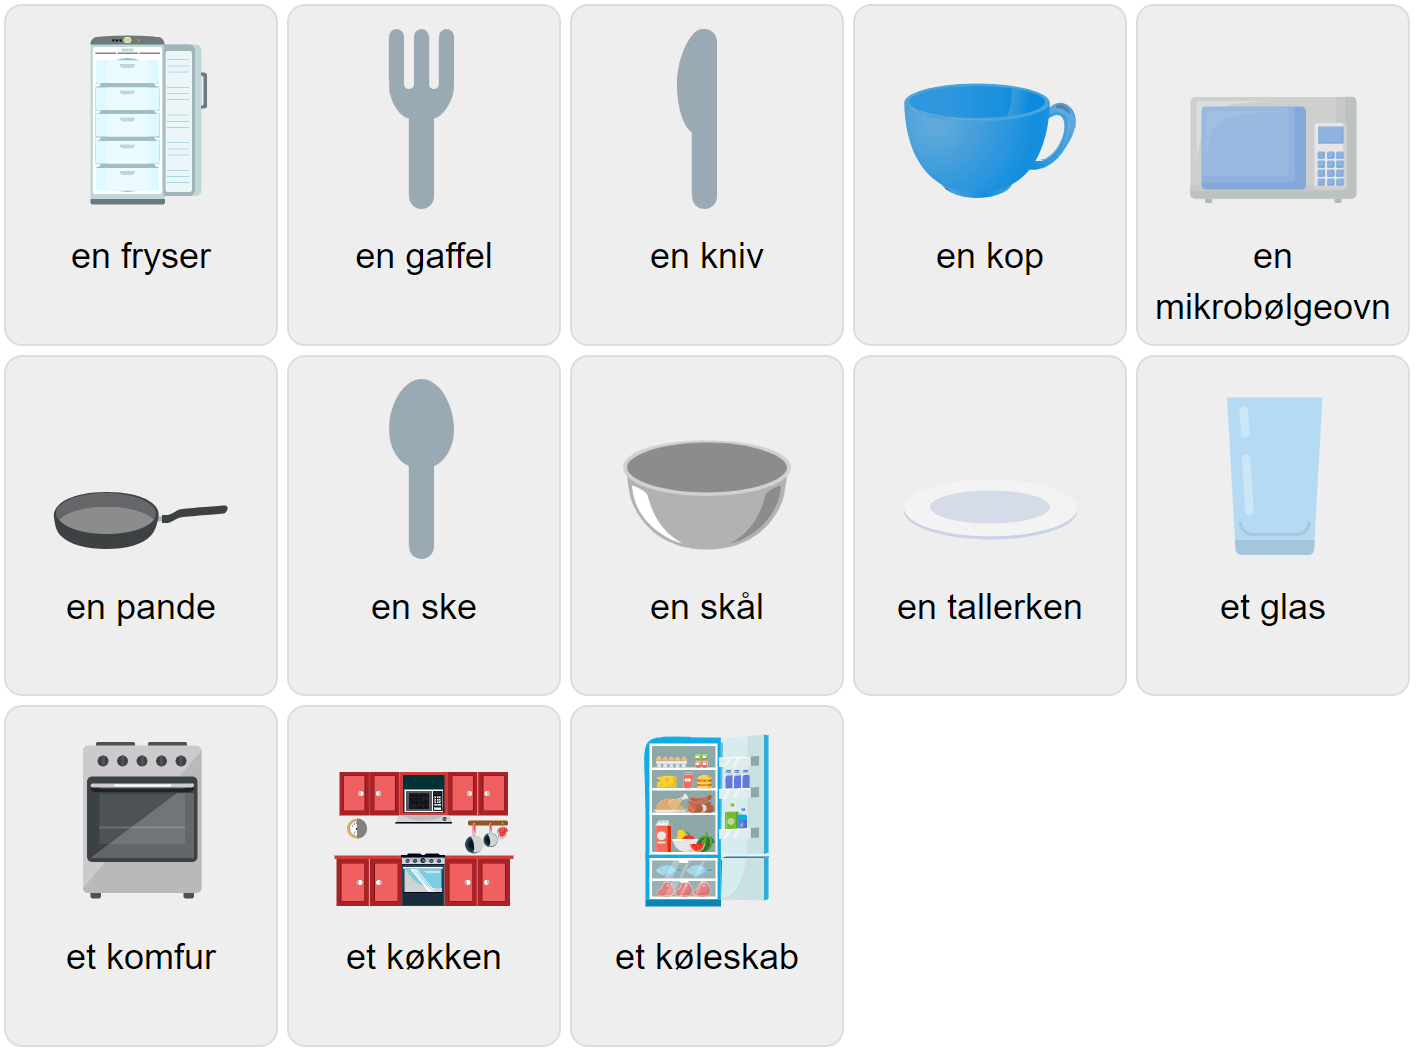 Кухонная лексика на датском языке